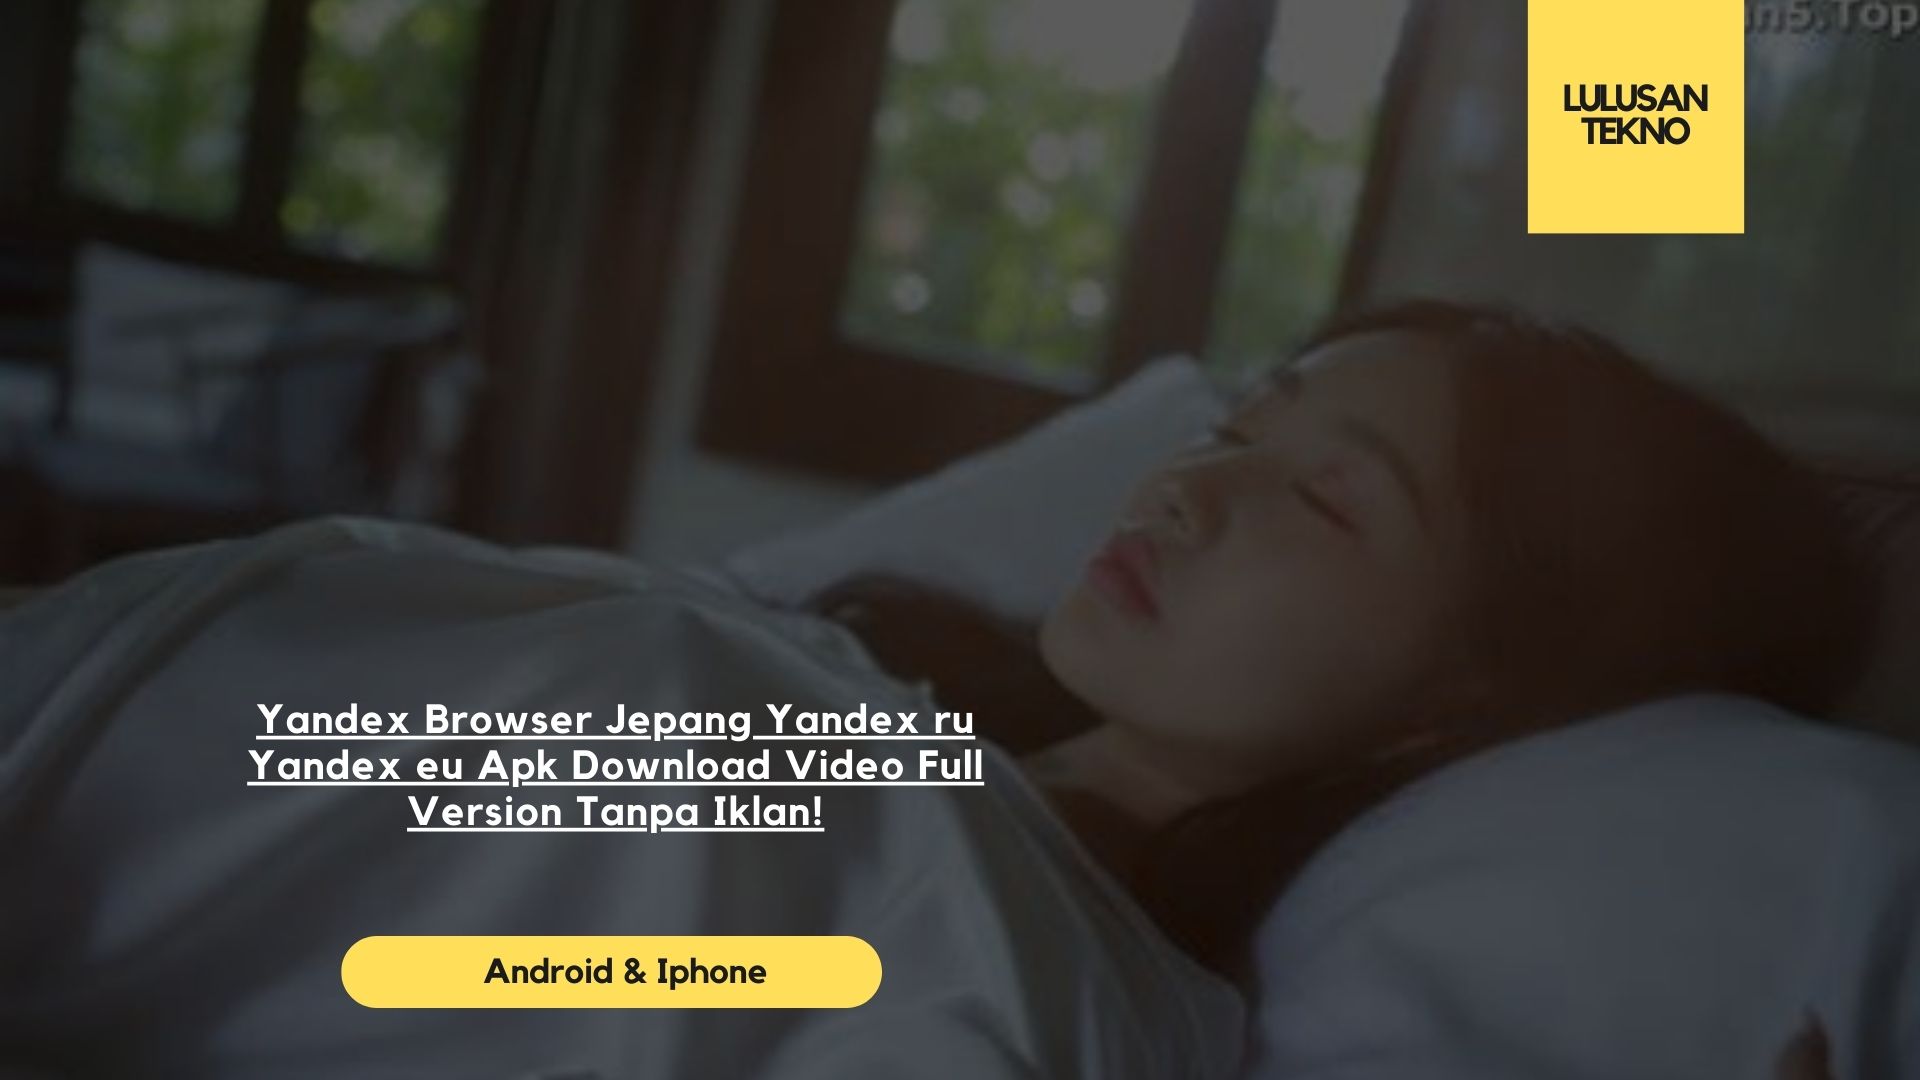 Yandex Browser Jepang Yandex ru Yandex eu Apk Download Video Full Version Tanpa Iklan!